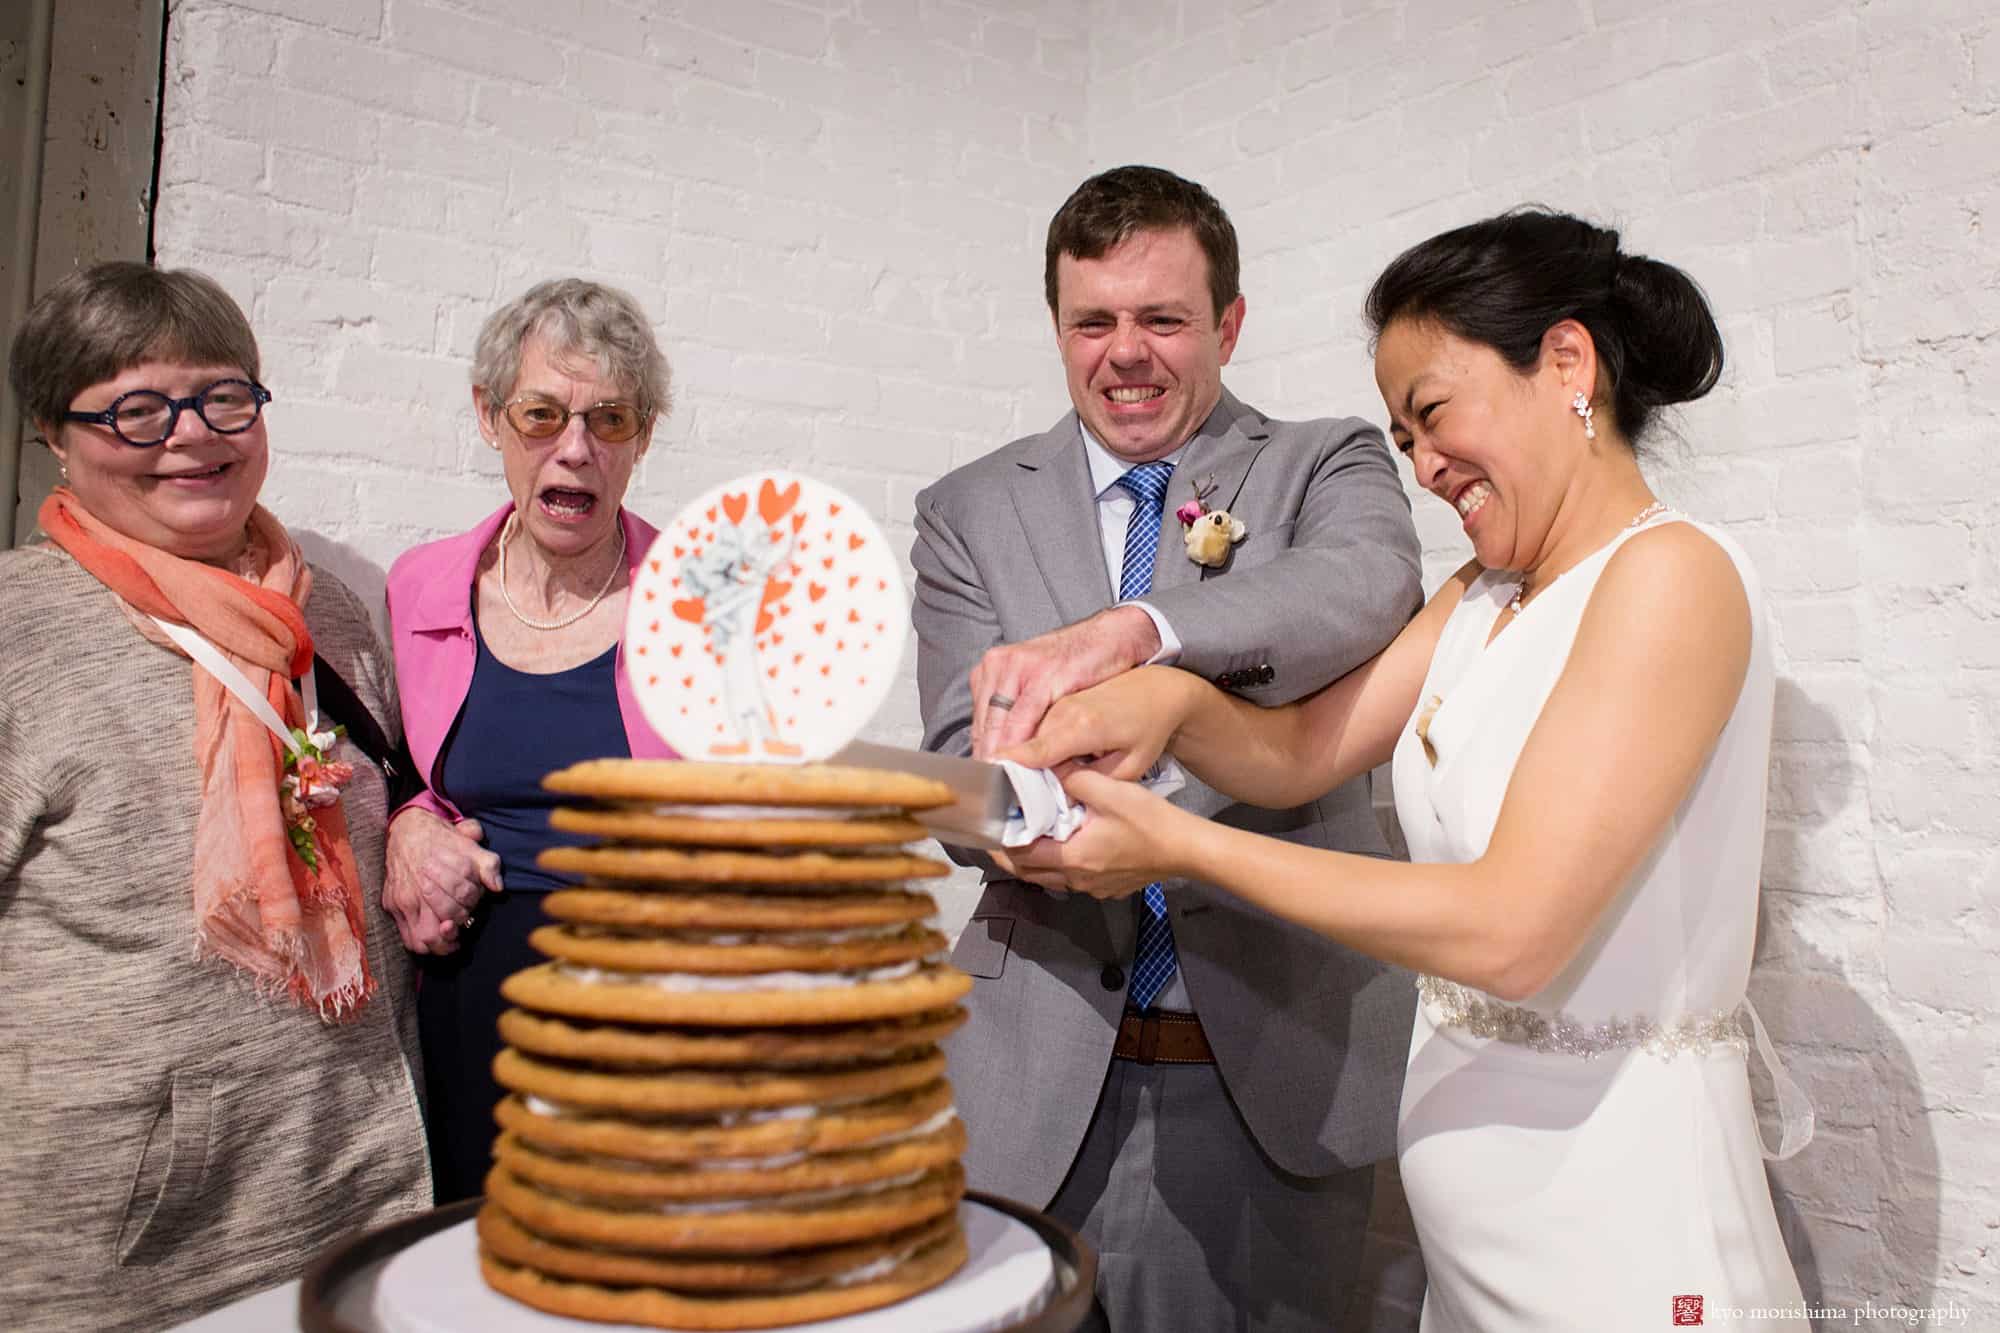 Wedding Cake Alternatives